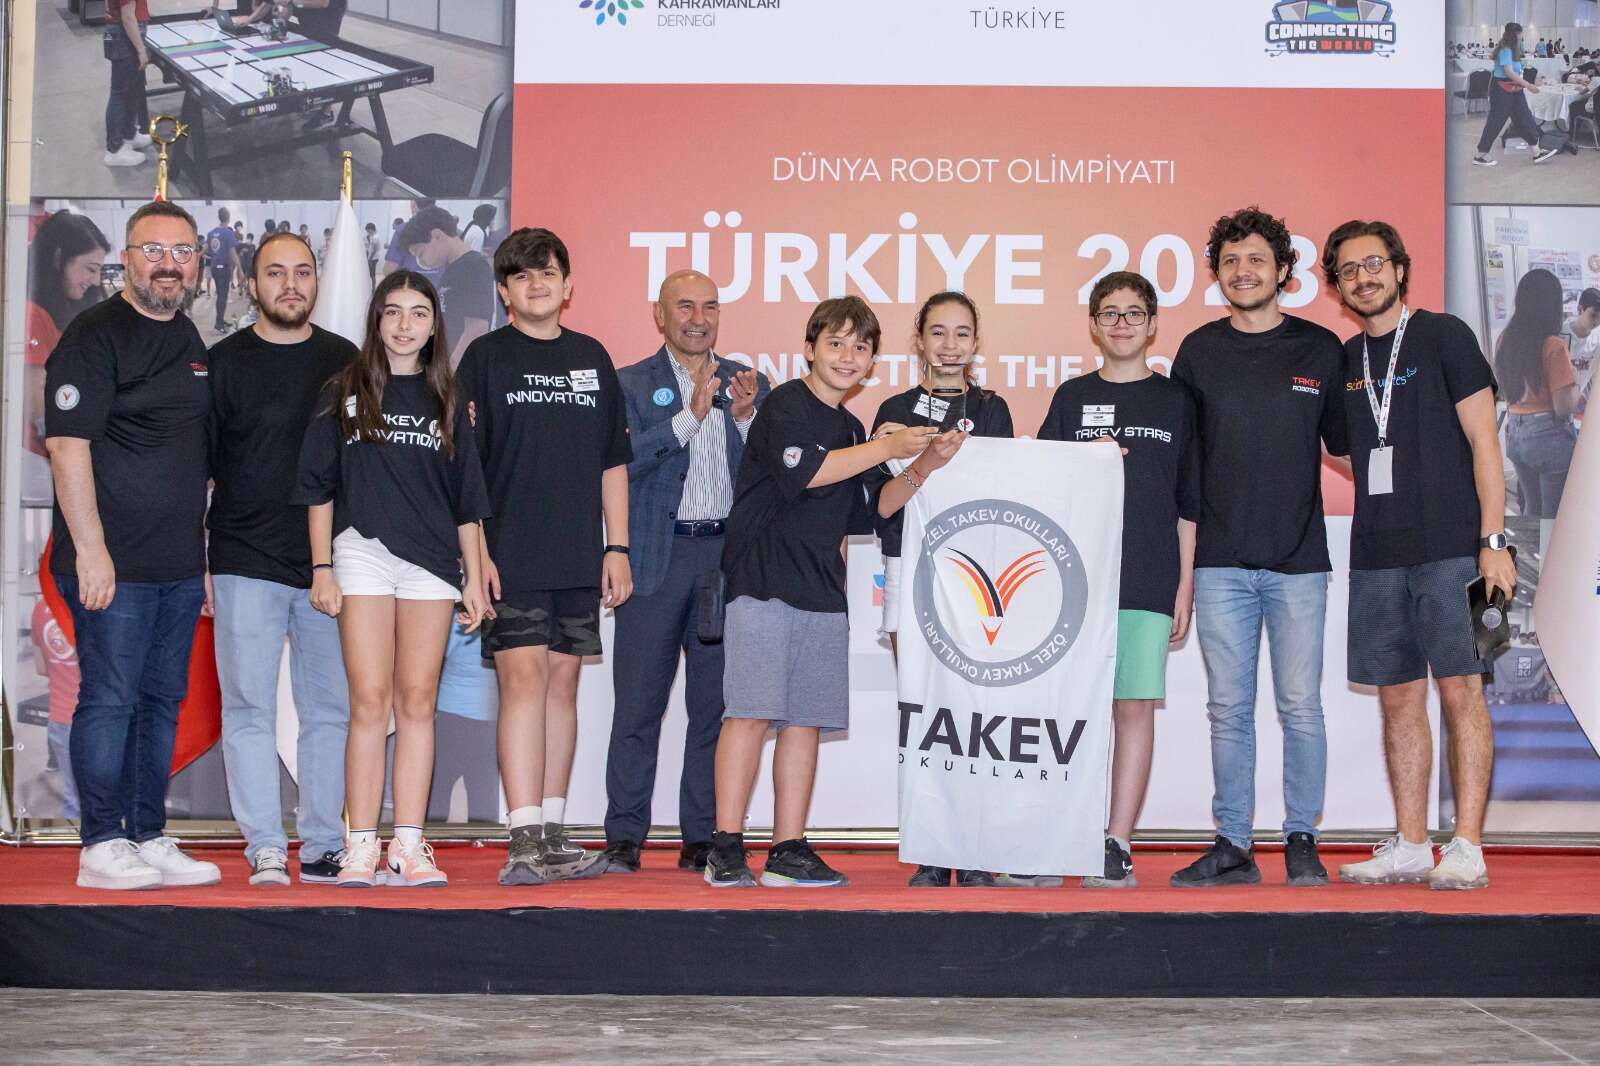 Dünya Robot Olimpiyatı Türkiye